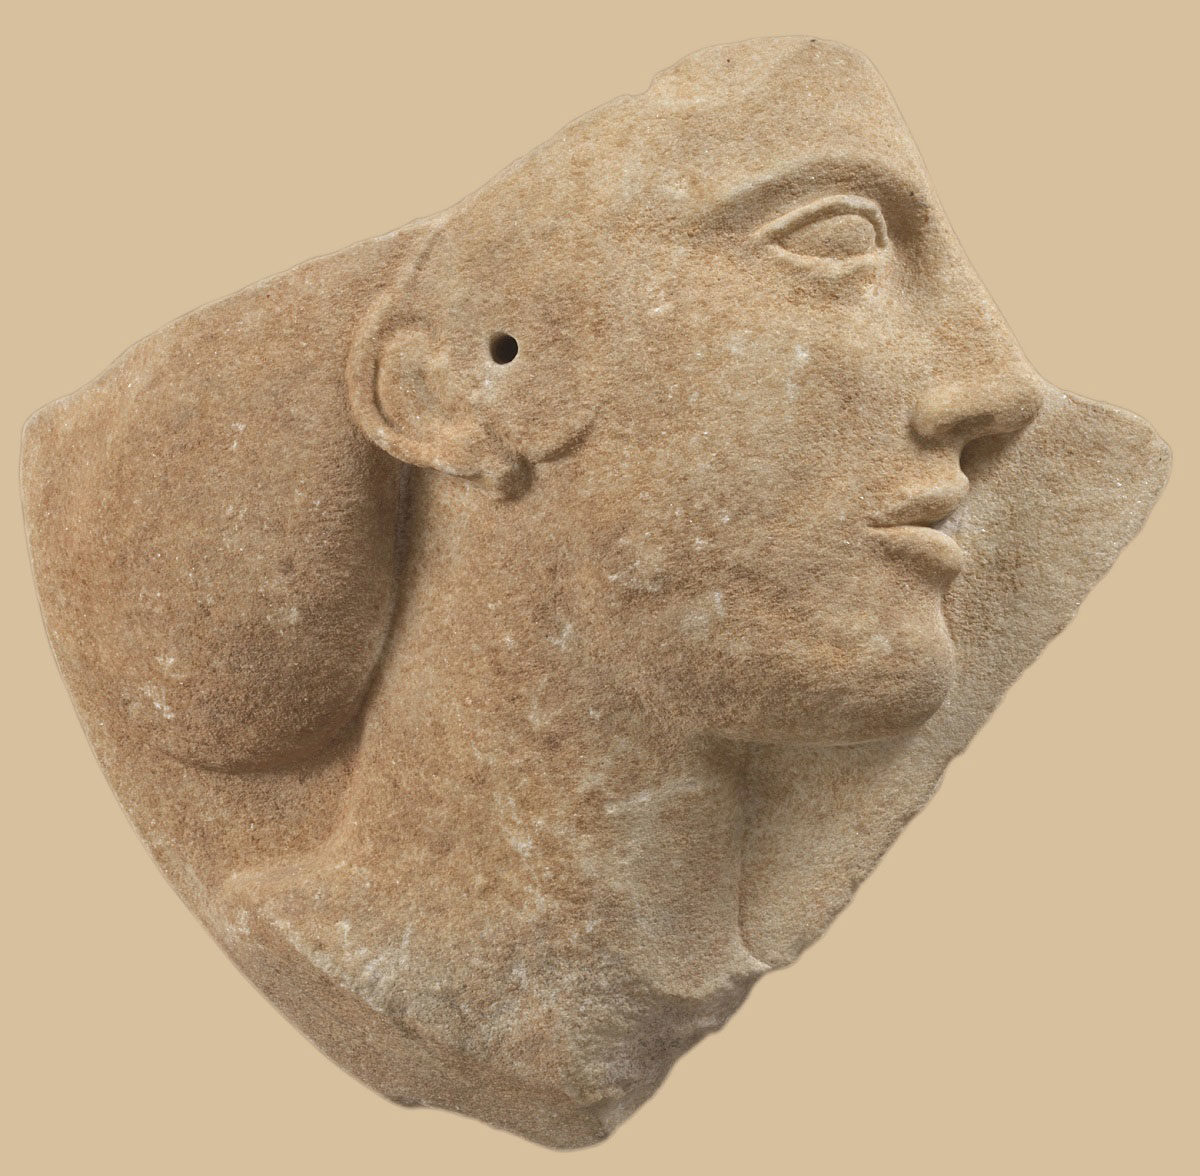 Τμήμα μαρμάρινου δίσκου με ανάγλυφη γυναικεία κεφαλή, πιθανώς η Αφροδίτη. Από τη Μήλο. Γύρω στο 460-450 π.Χ. (φωτογράφος: Γιάννης Πατρικιάνος). © Εθνικό Αρχαιολογικό Μουσείο/ΤΑΠ.